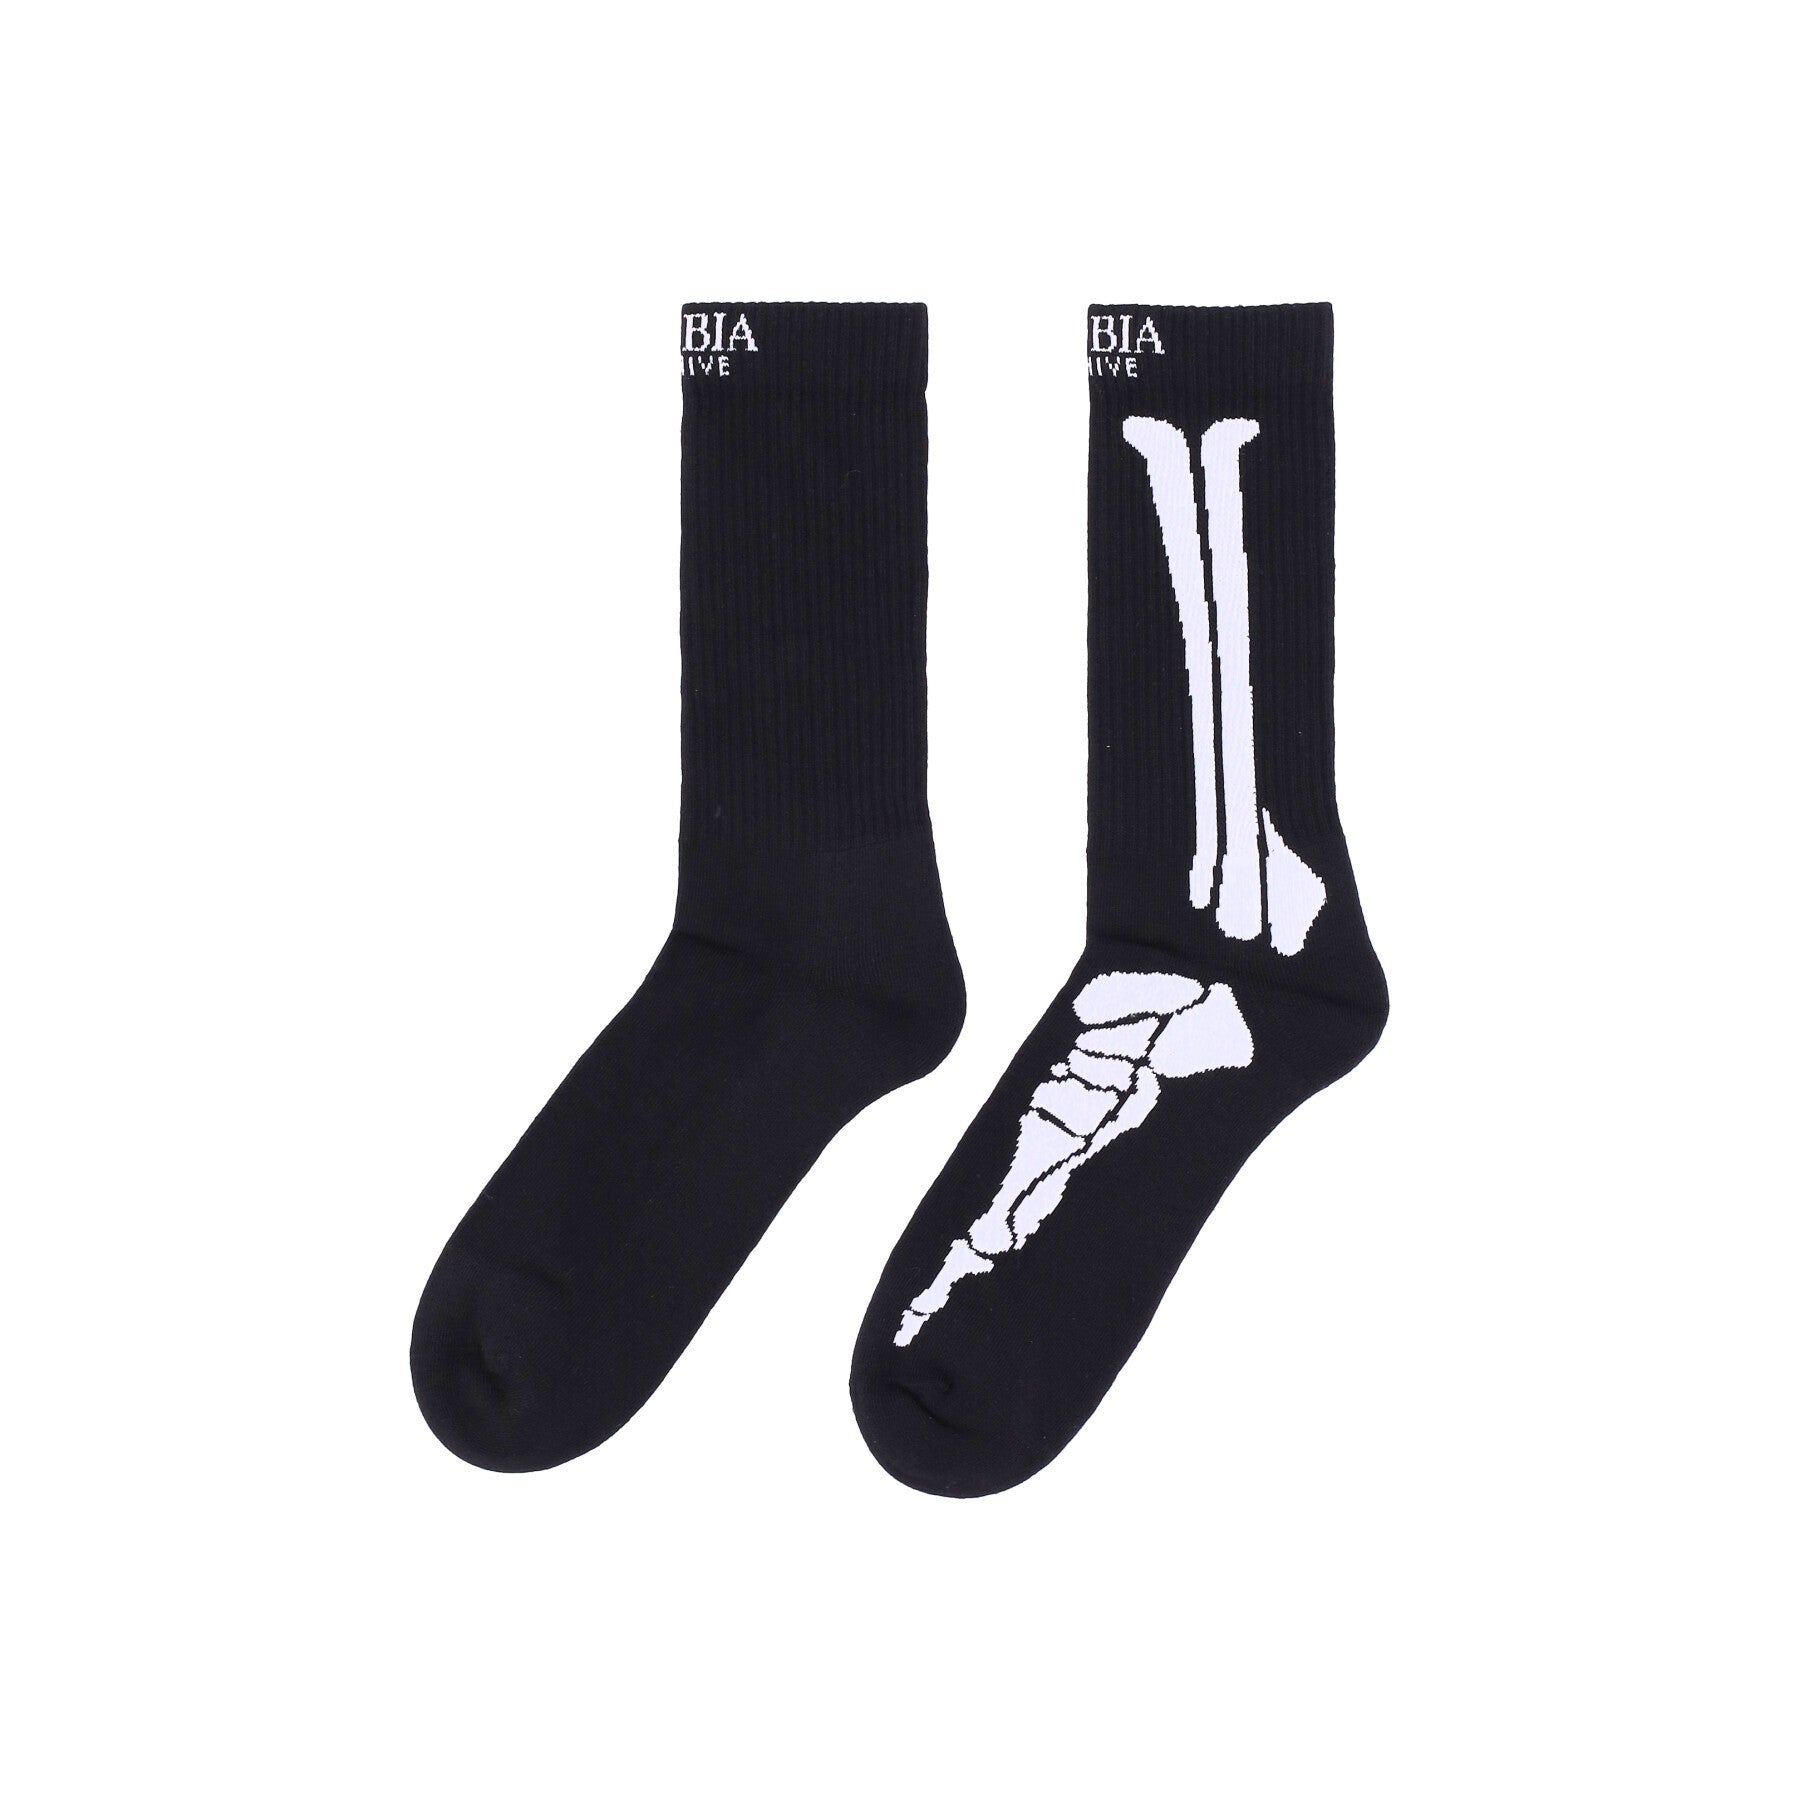 Phobia, Calza Media Uomo Bones Print Socks, Black/white